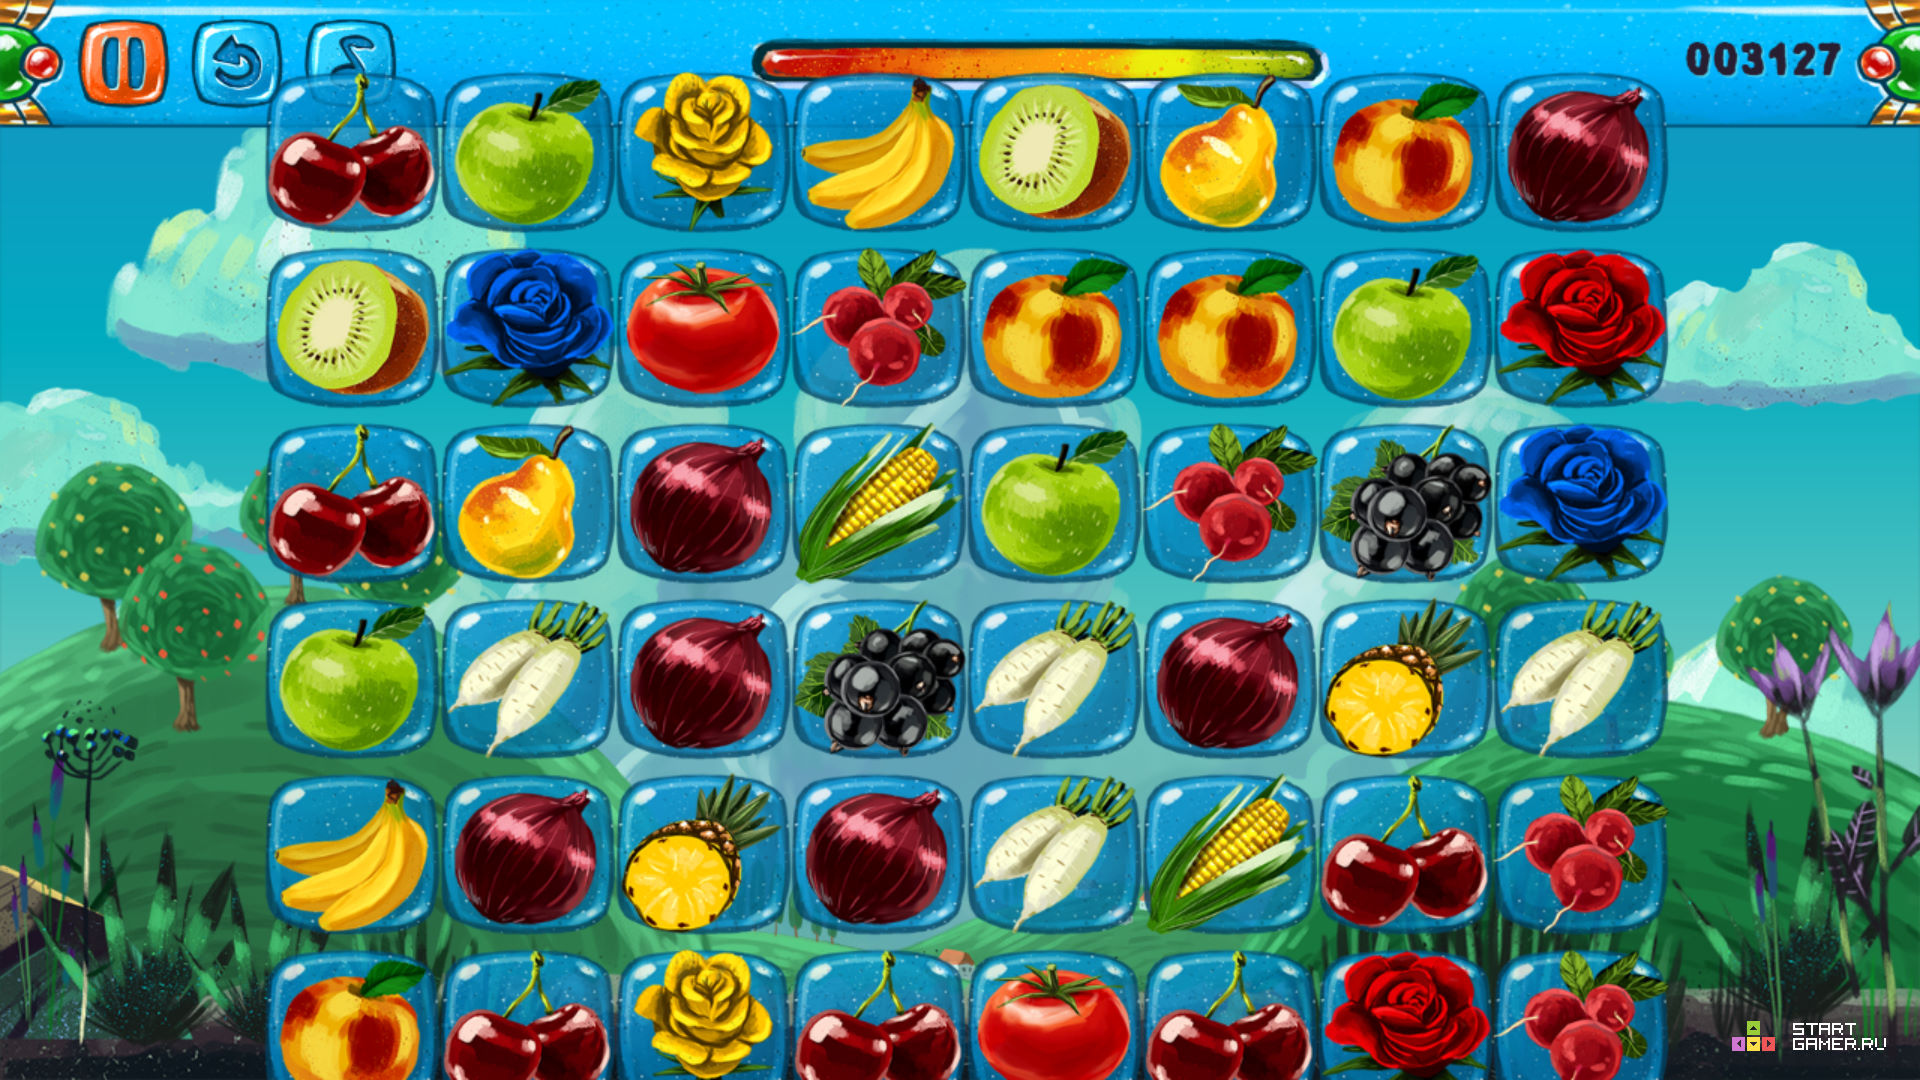 Карта моря блокс фрут. В2 фрукты Блокс Фрутс. Игра Fruit connect 2. Игра Маджонг овощи и фрукты 1. Фрукты в игре Блокс Фрут.